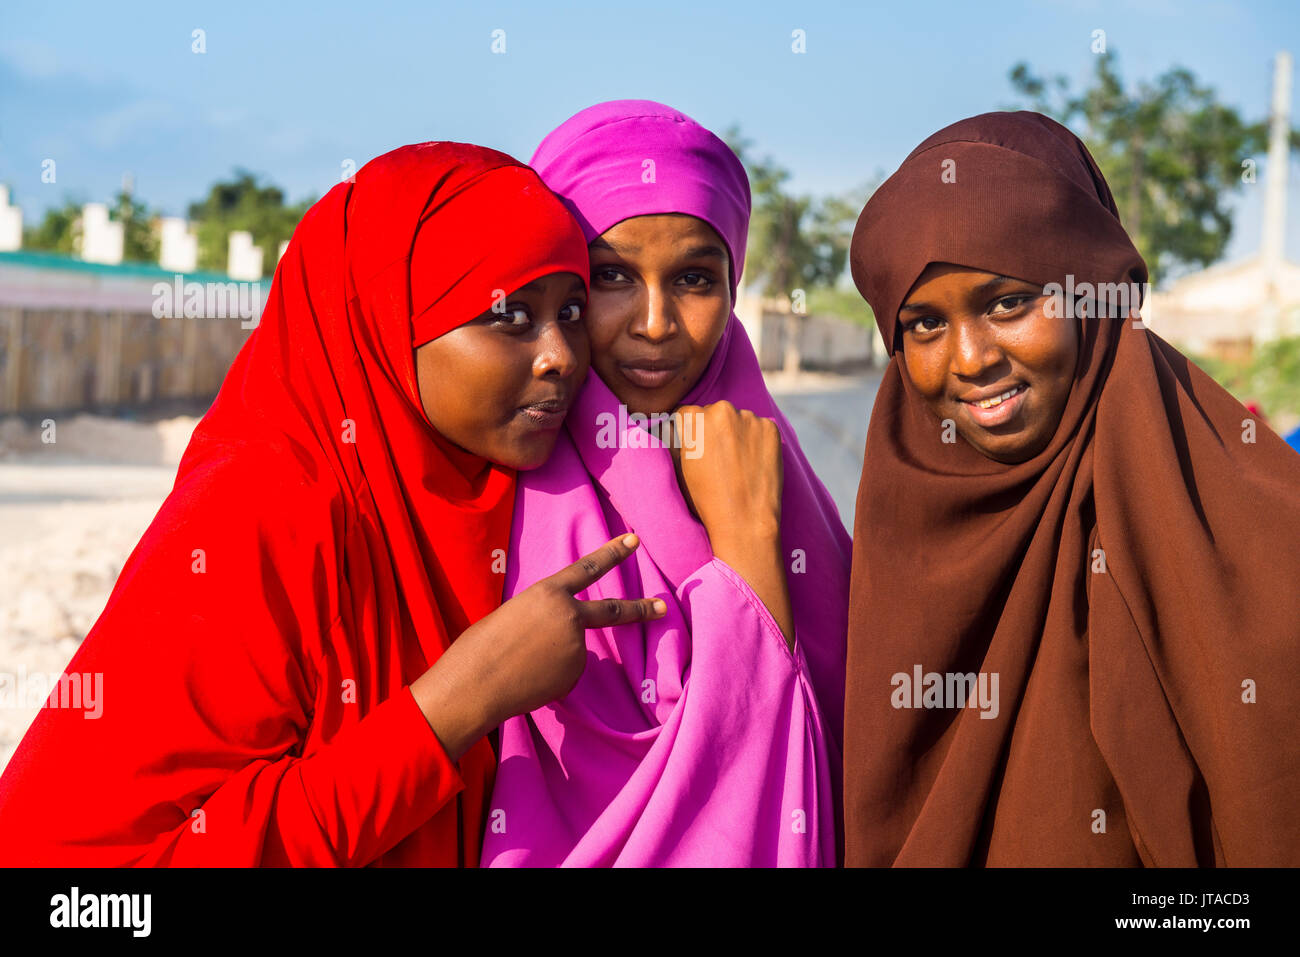 Habillés de couleurs vives les femmes musulmanes dans la ville côtière de Berbera, Somalie, Somalie, Afrique du Sud Banque D'Images